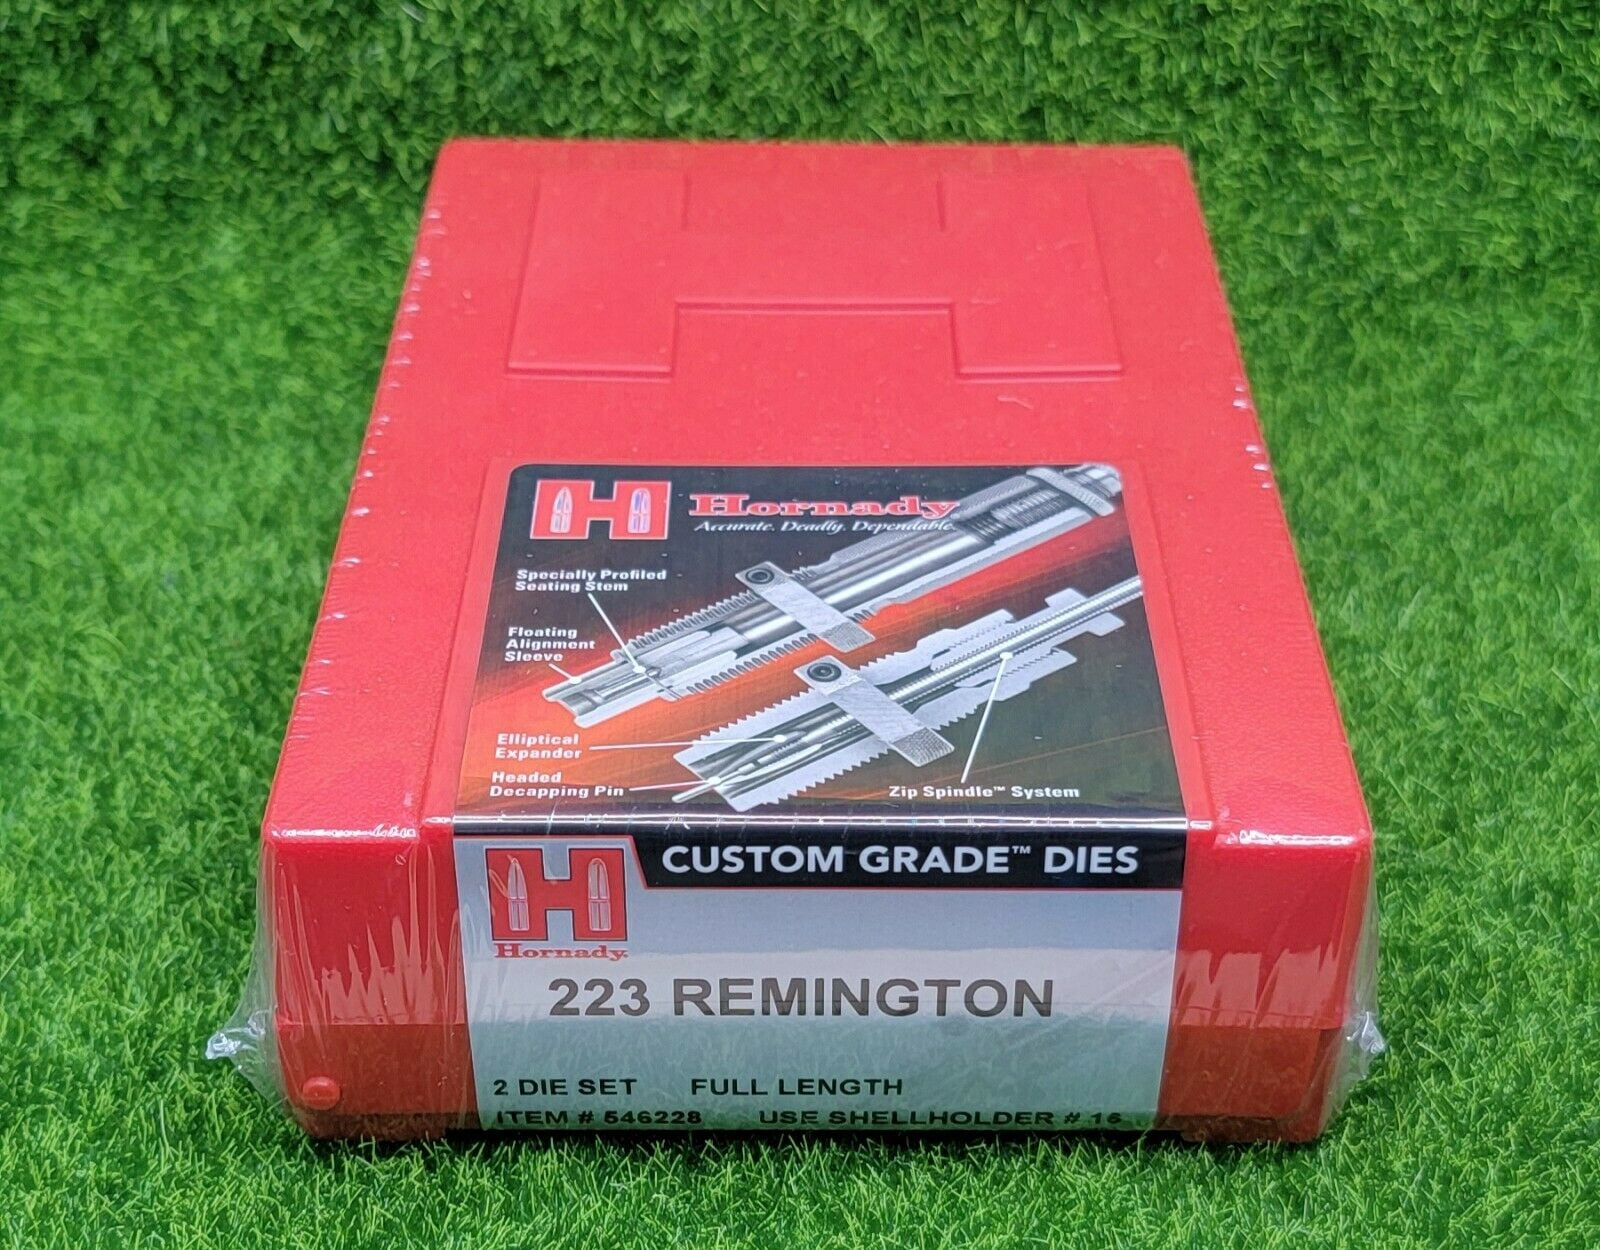 Hornady 223 Remington Custom Grade Reloading 2-Die Set Full Length 546228 